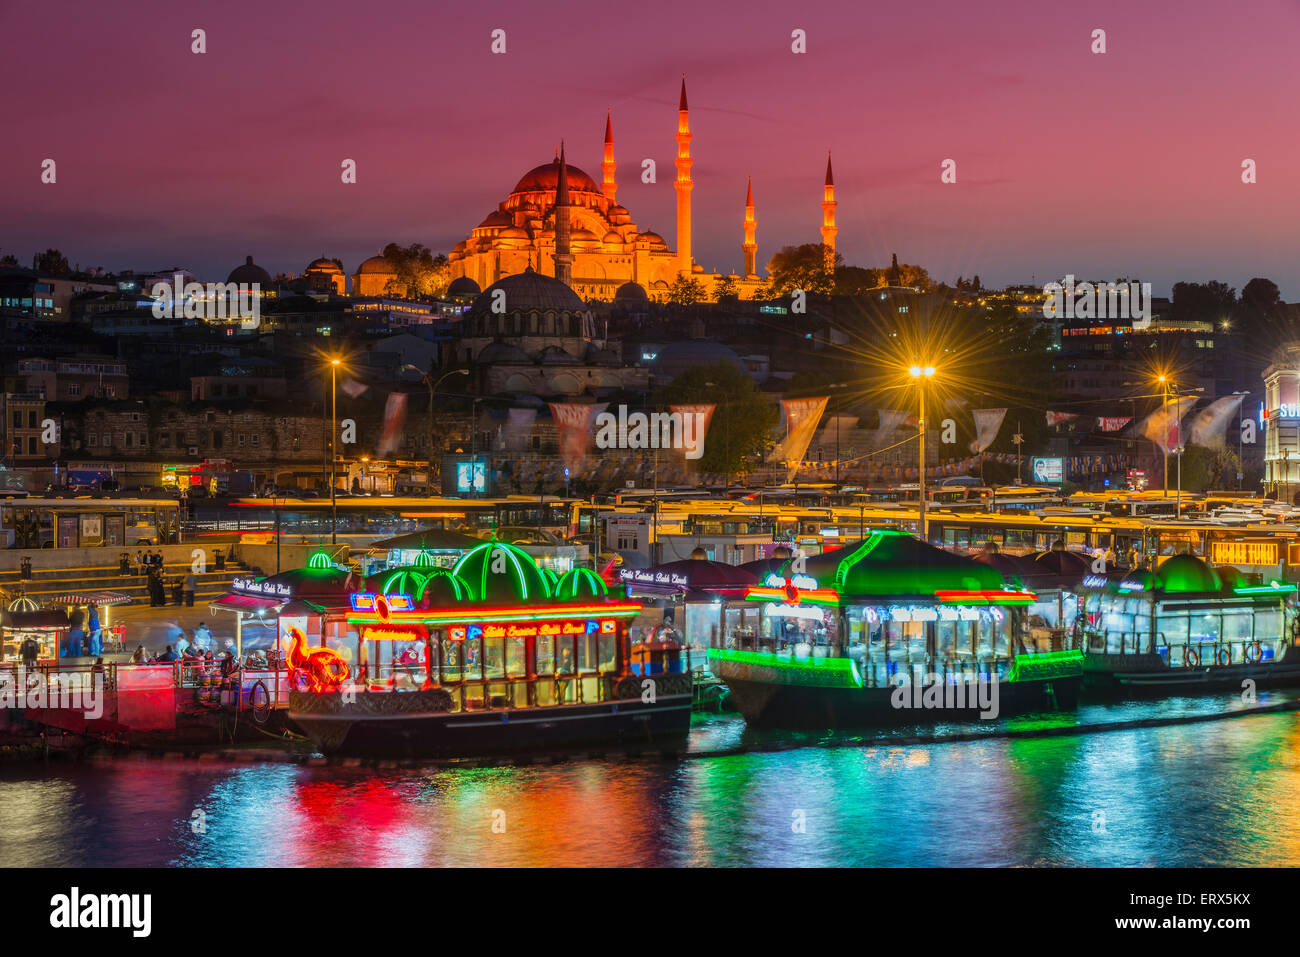 Restaurants bateau flottant sur la Corne d'or avec la Mosquée Suleymaniye derrière au crépuscule, Istanbul, Turquie Banque D'Images